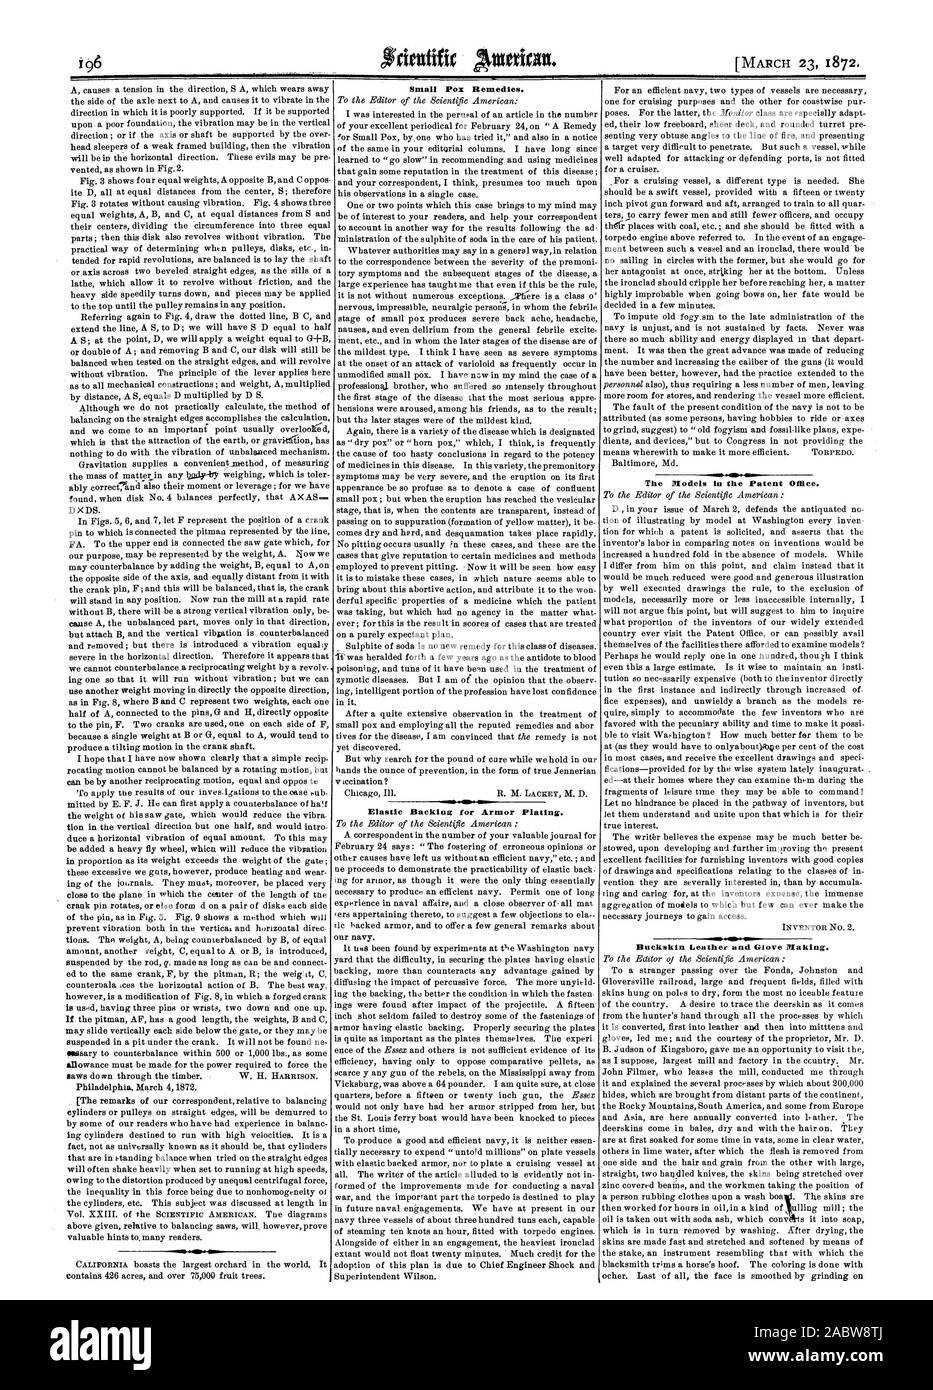 Viruela remedios. Apoyo elástico para el blindaje. Los modelos en la Oficina de Patentes. La fabricación de guantes de cuero y Buckskin., Scientific American, 1872-03-23 Foto de stock